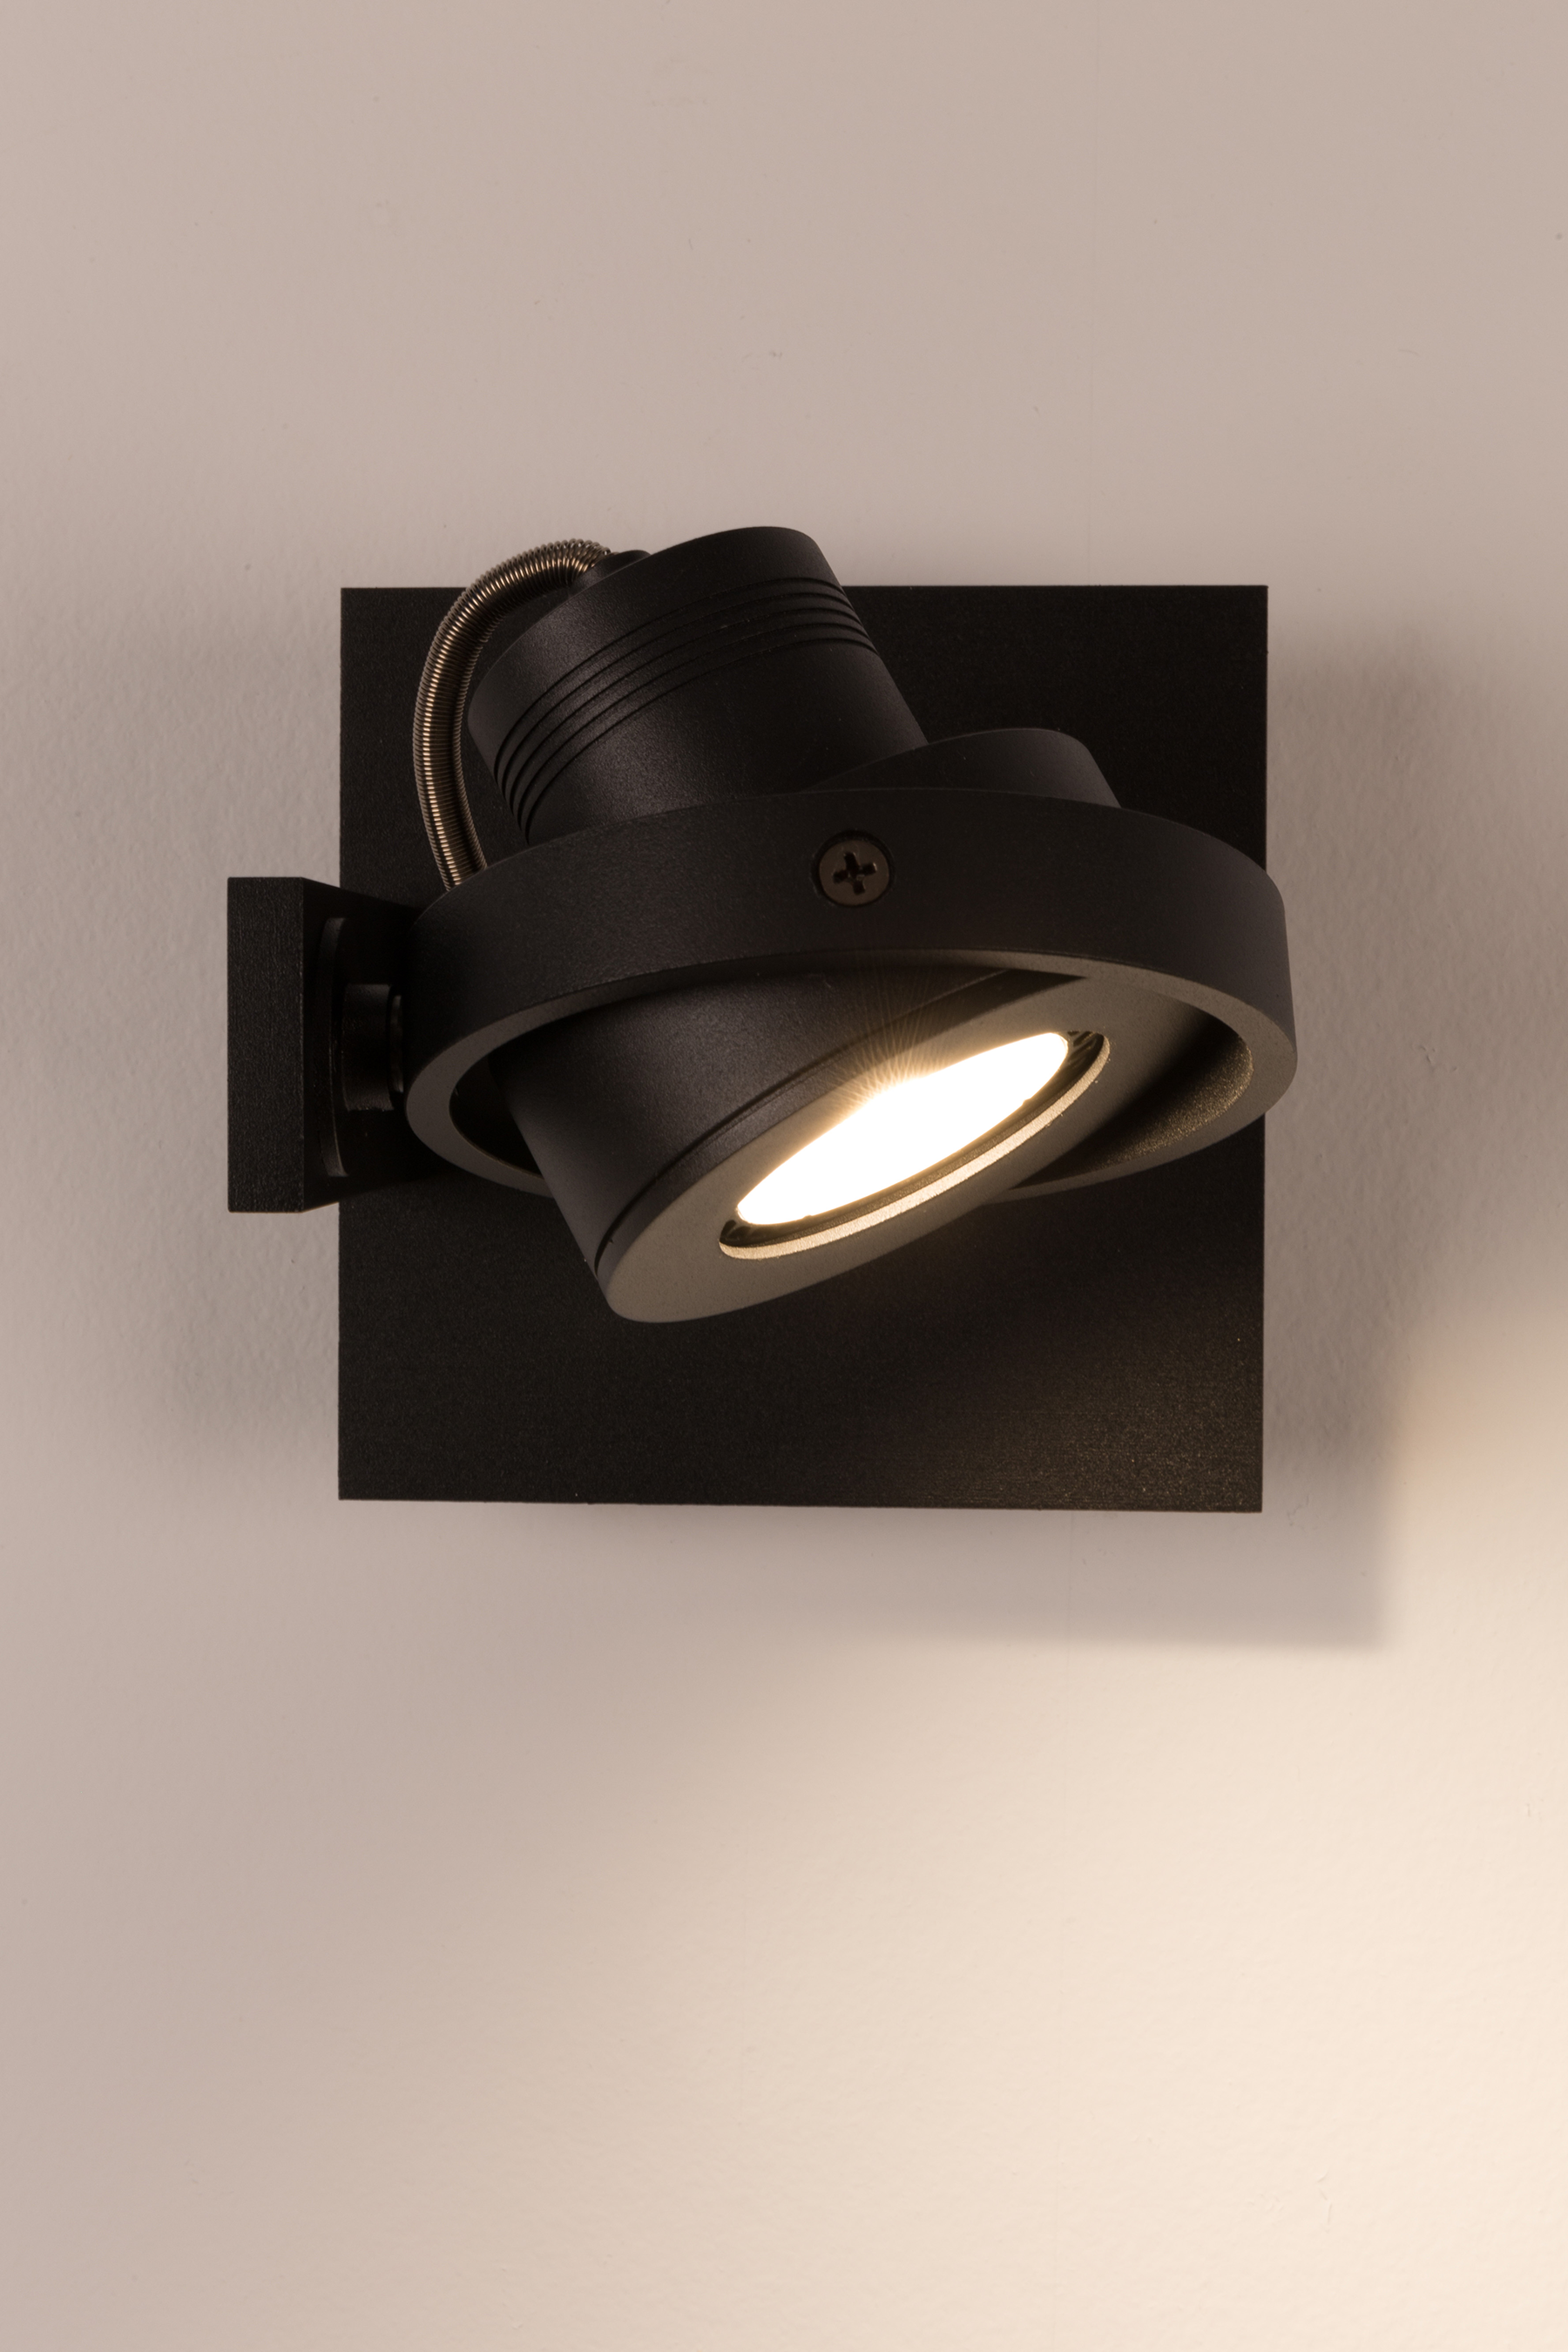 SPOT Light Luci 1 DTW  in Schwarz präsentiert im Onlineshop von KAQTU Design AG. Deckenleuchte ist von Zuiver